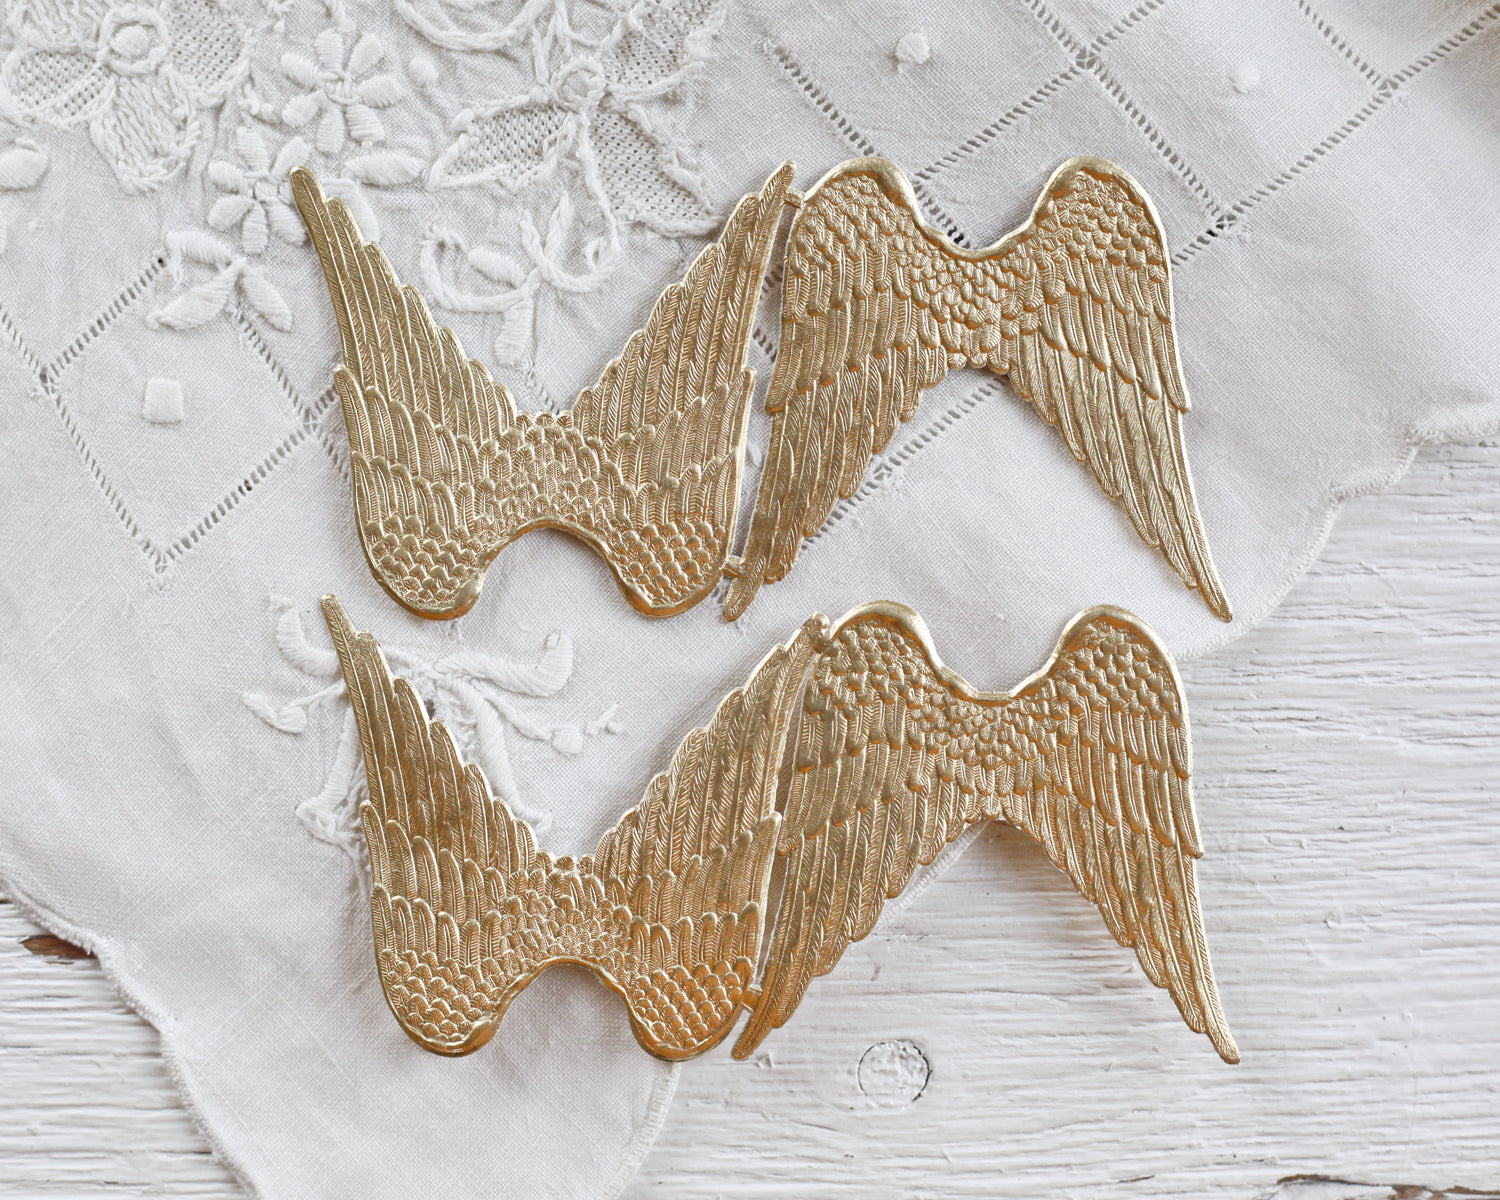 Paper Angel Wings - Embossed Gold Foil Die Cut Dresden Paper Wings, 4 Pcs.